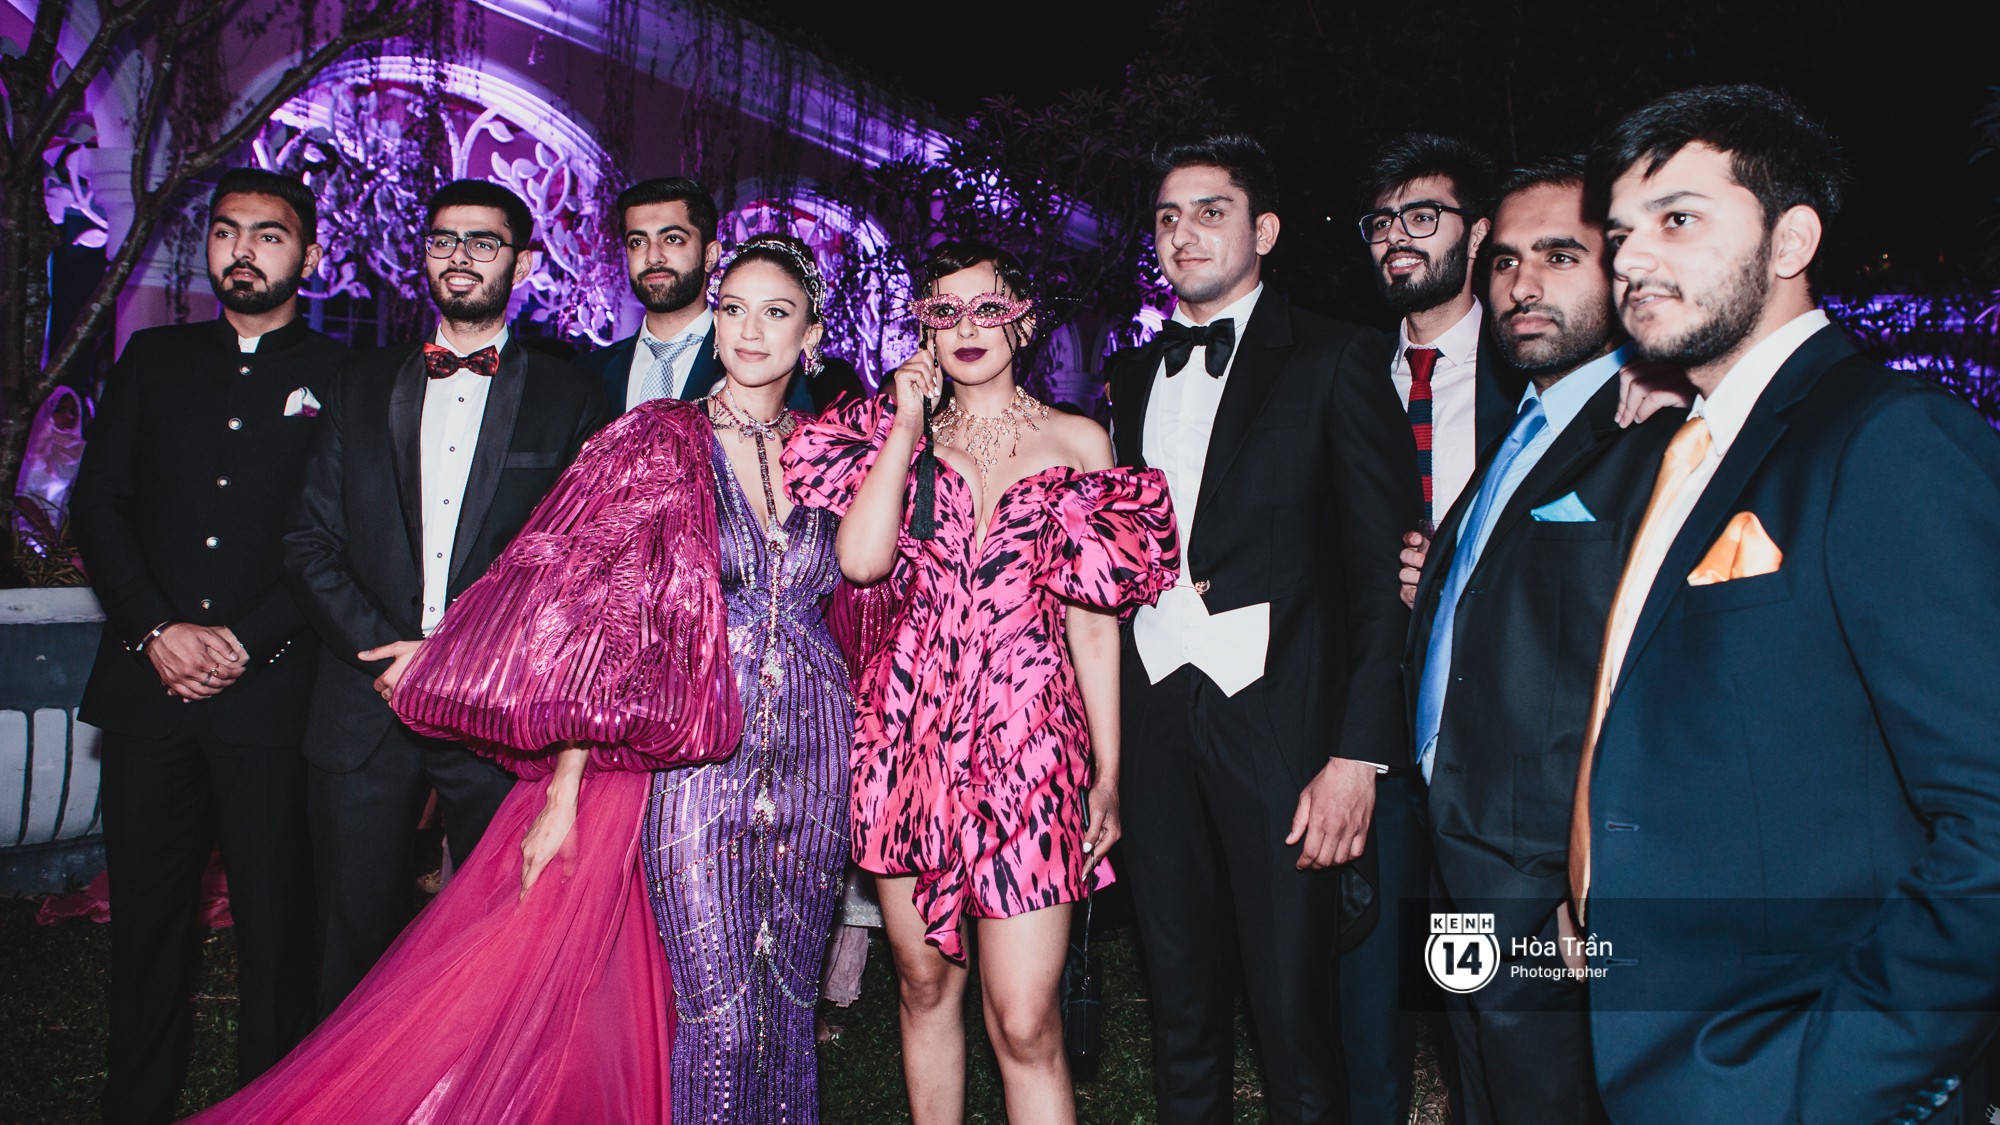 Cặp đôi tỷ phú Ấn Độ lộng lẫy cùng các khách mời đại gia vào đêm tiệc "Pink Party" đầu tiên ở Phú Quốc (+video) Hoatran-4197-1551979071490441102493